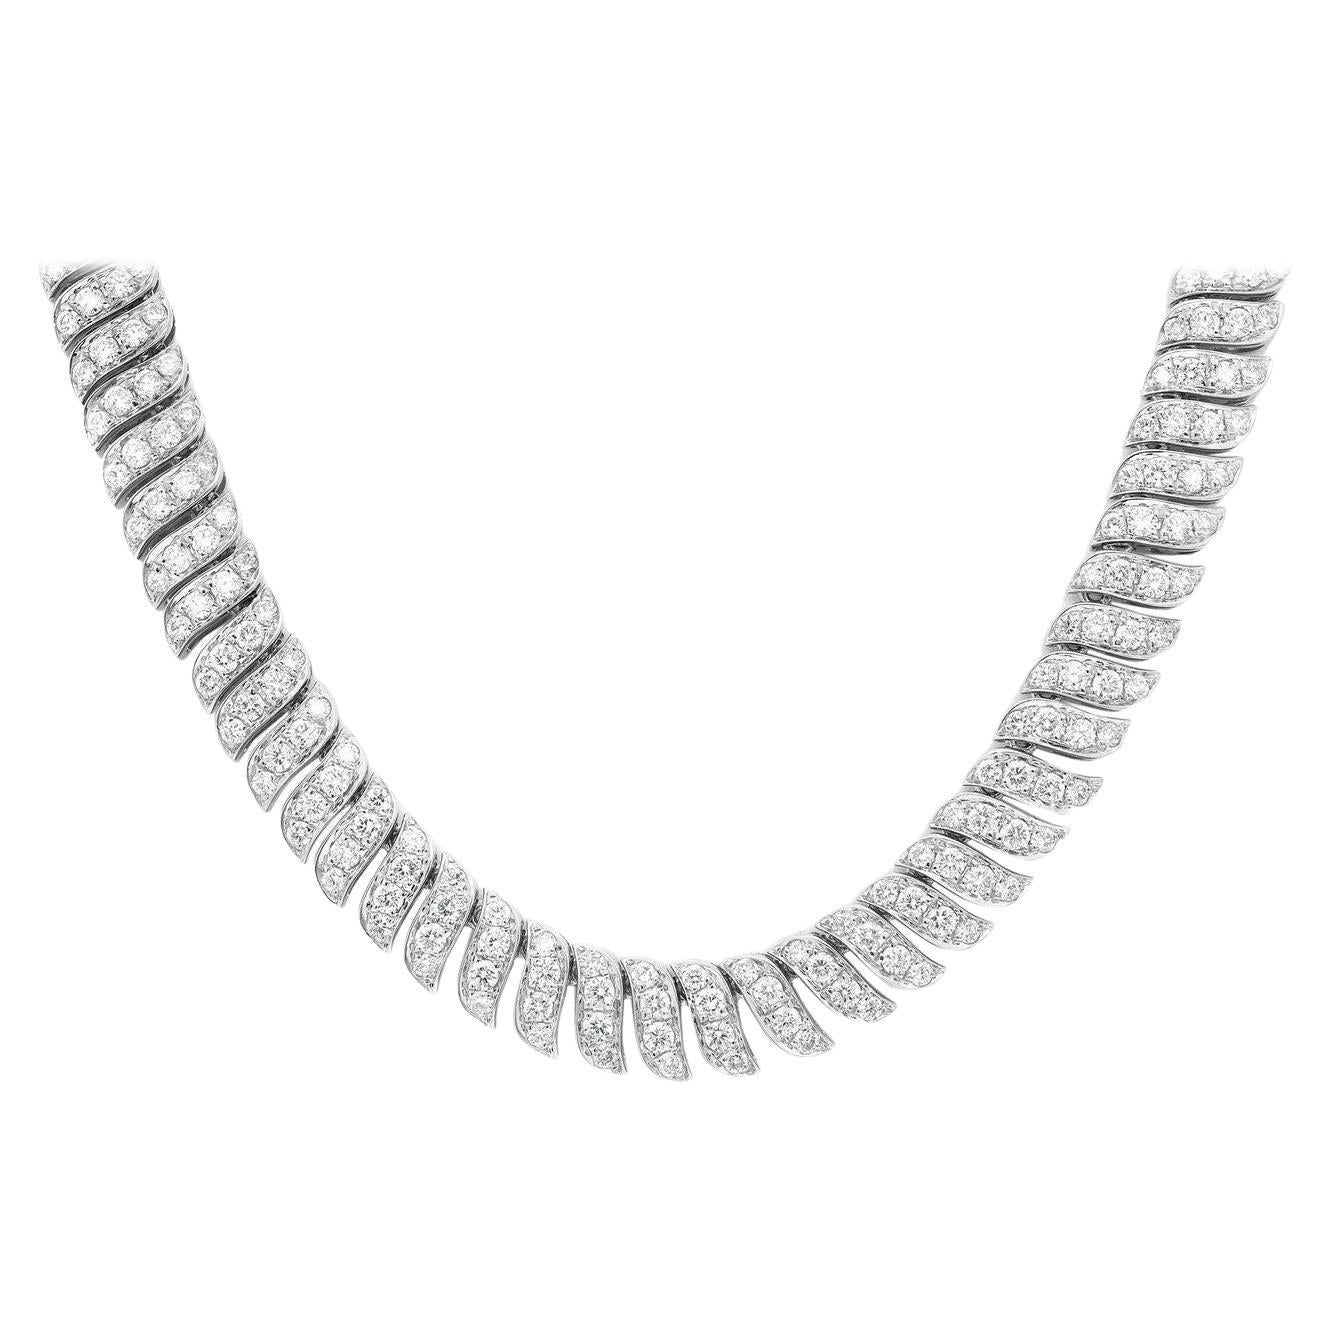 Elizabeth Fine Jewelry, collier en or blanc 18 carats avec diamants taille ronde de 8,33 carats